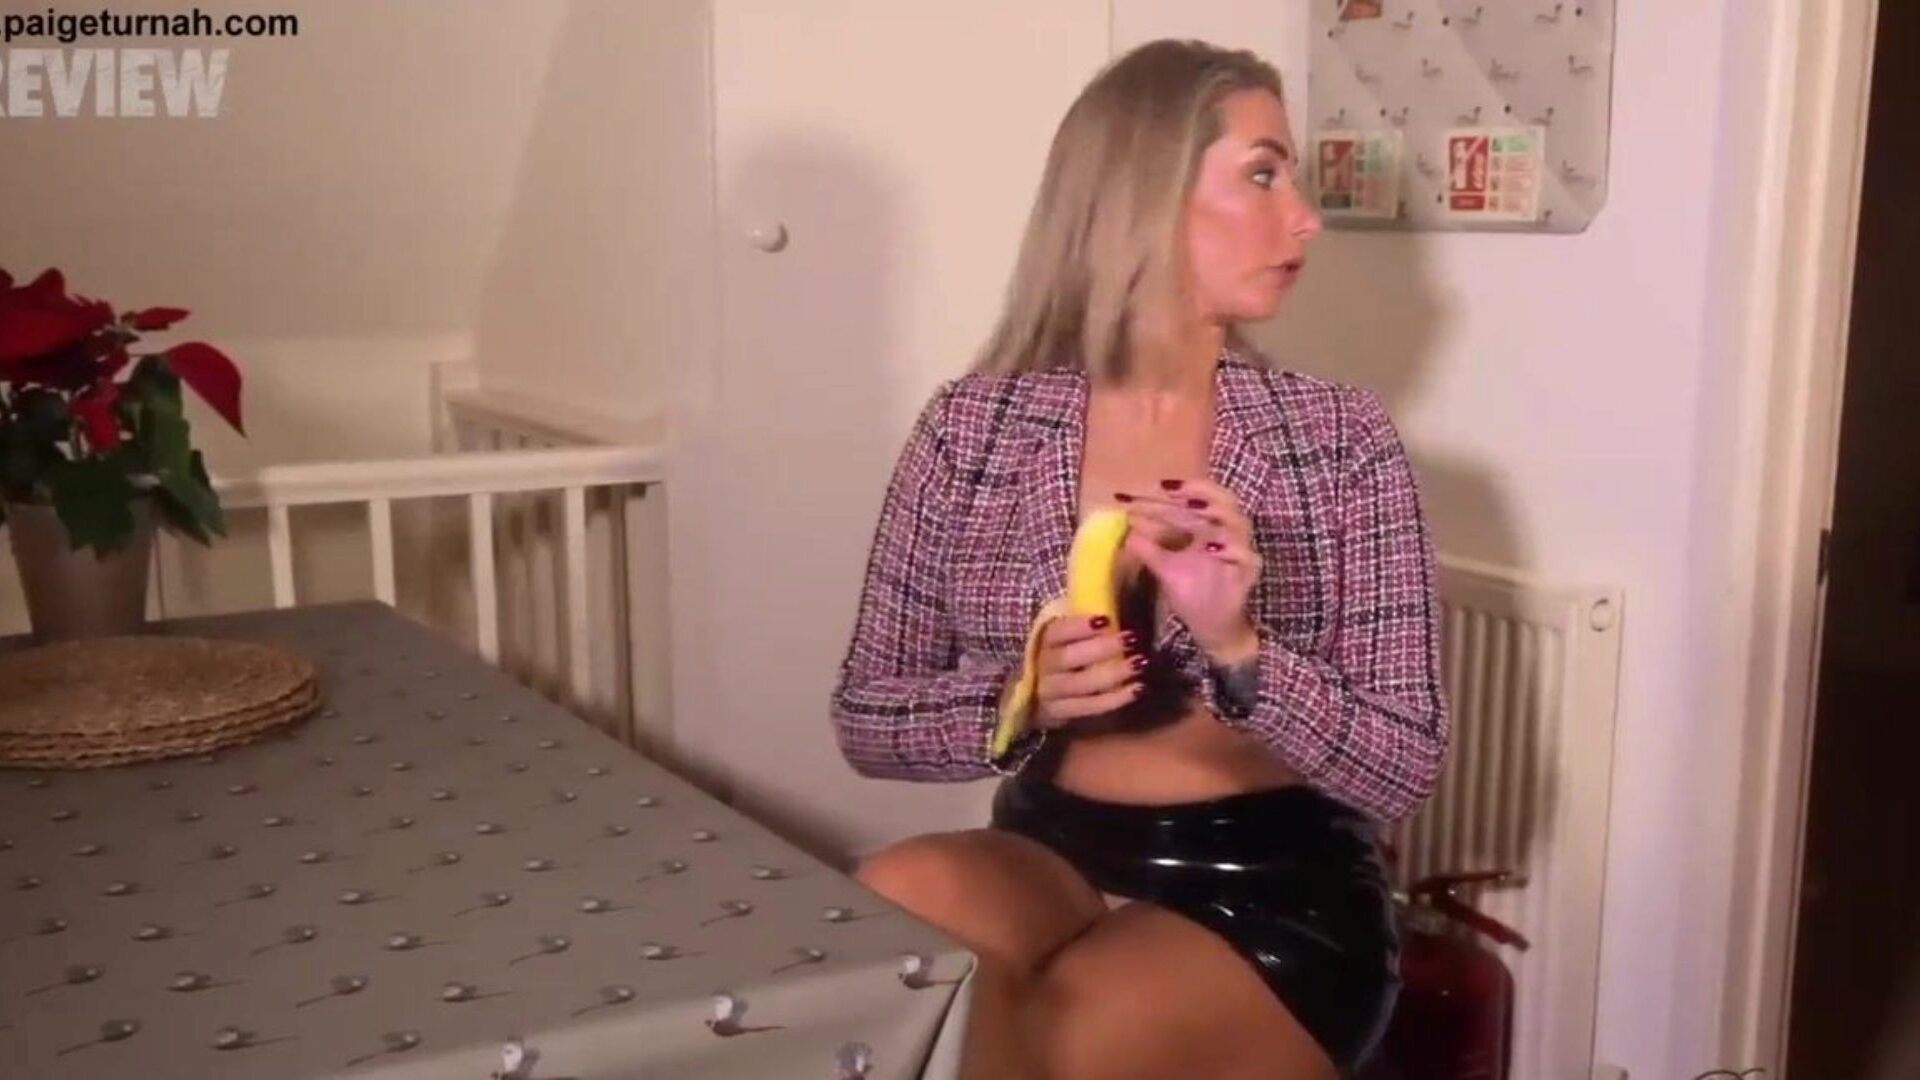 la nena británica paige turnah está en su pausa para el almuerzo y se burla de ti con su servicio oral de banana y desagües hendidos